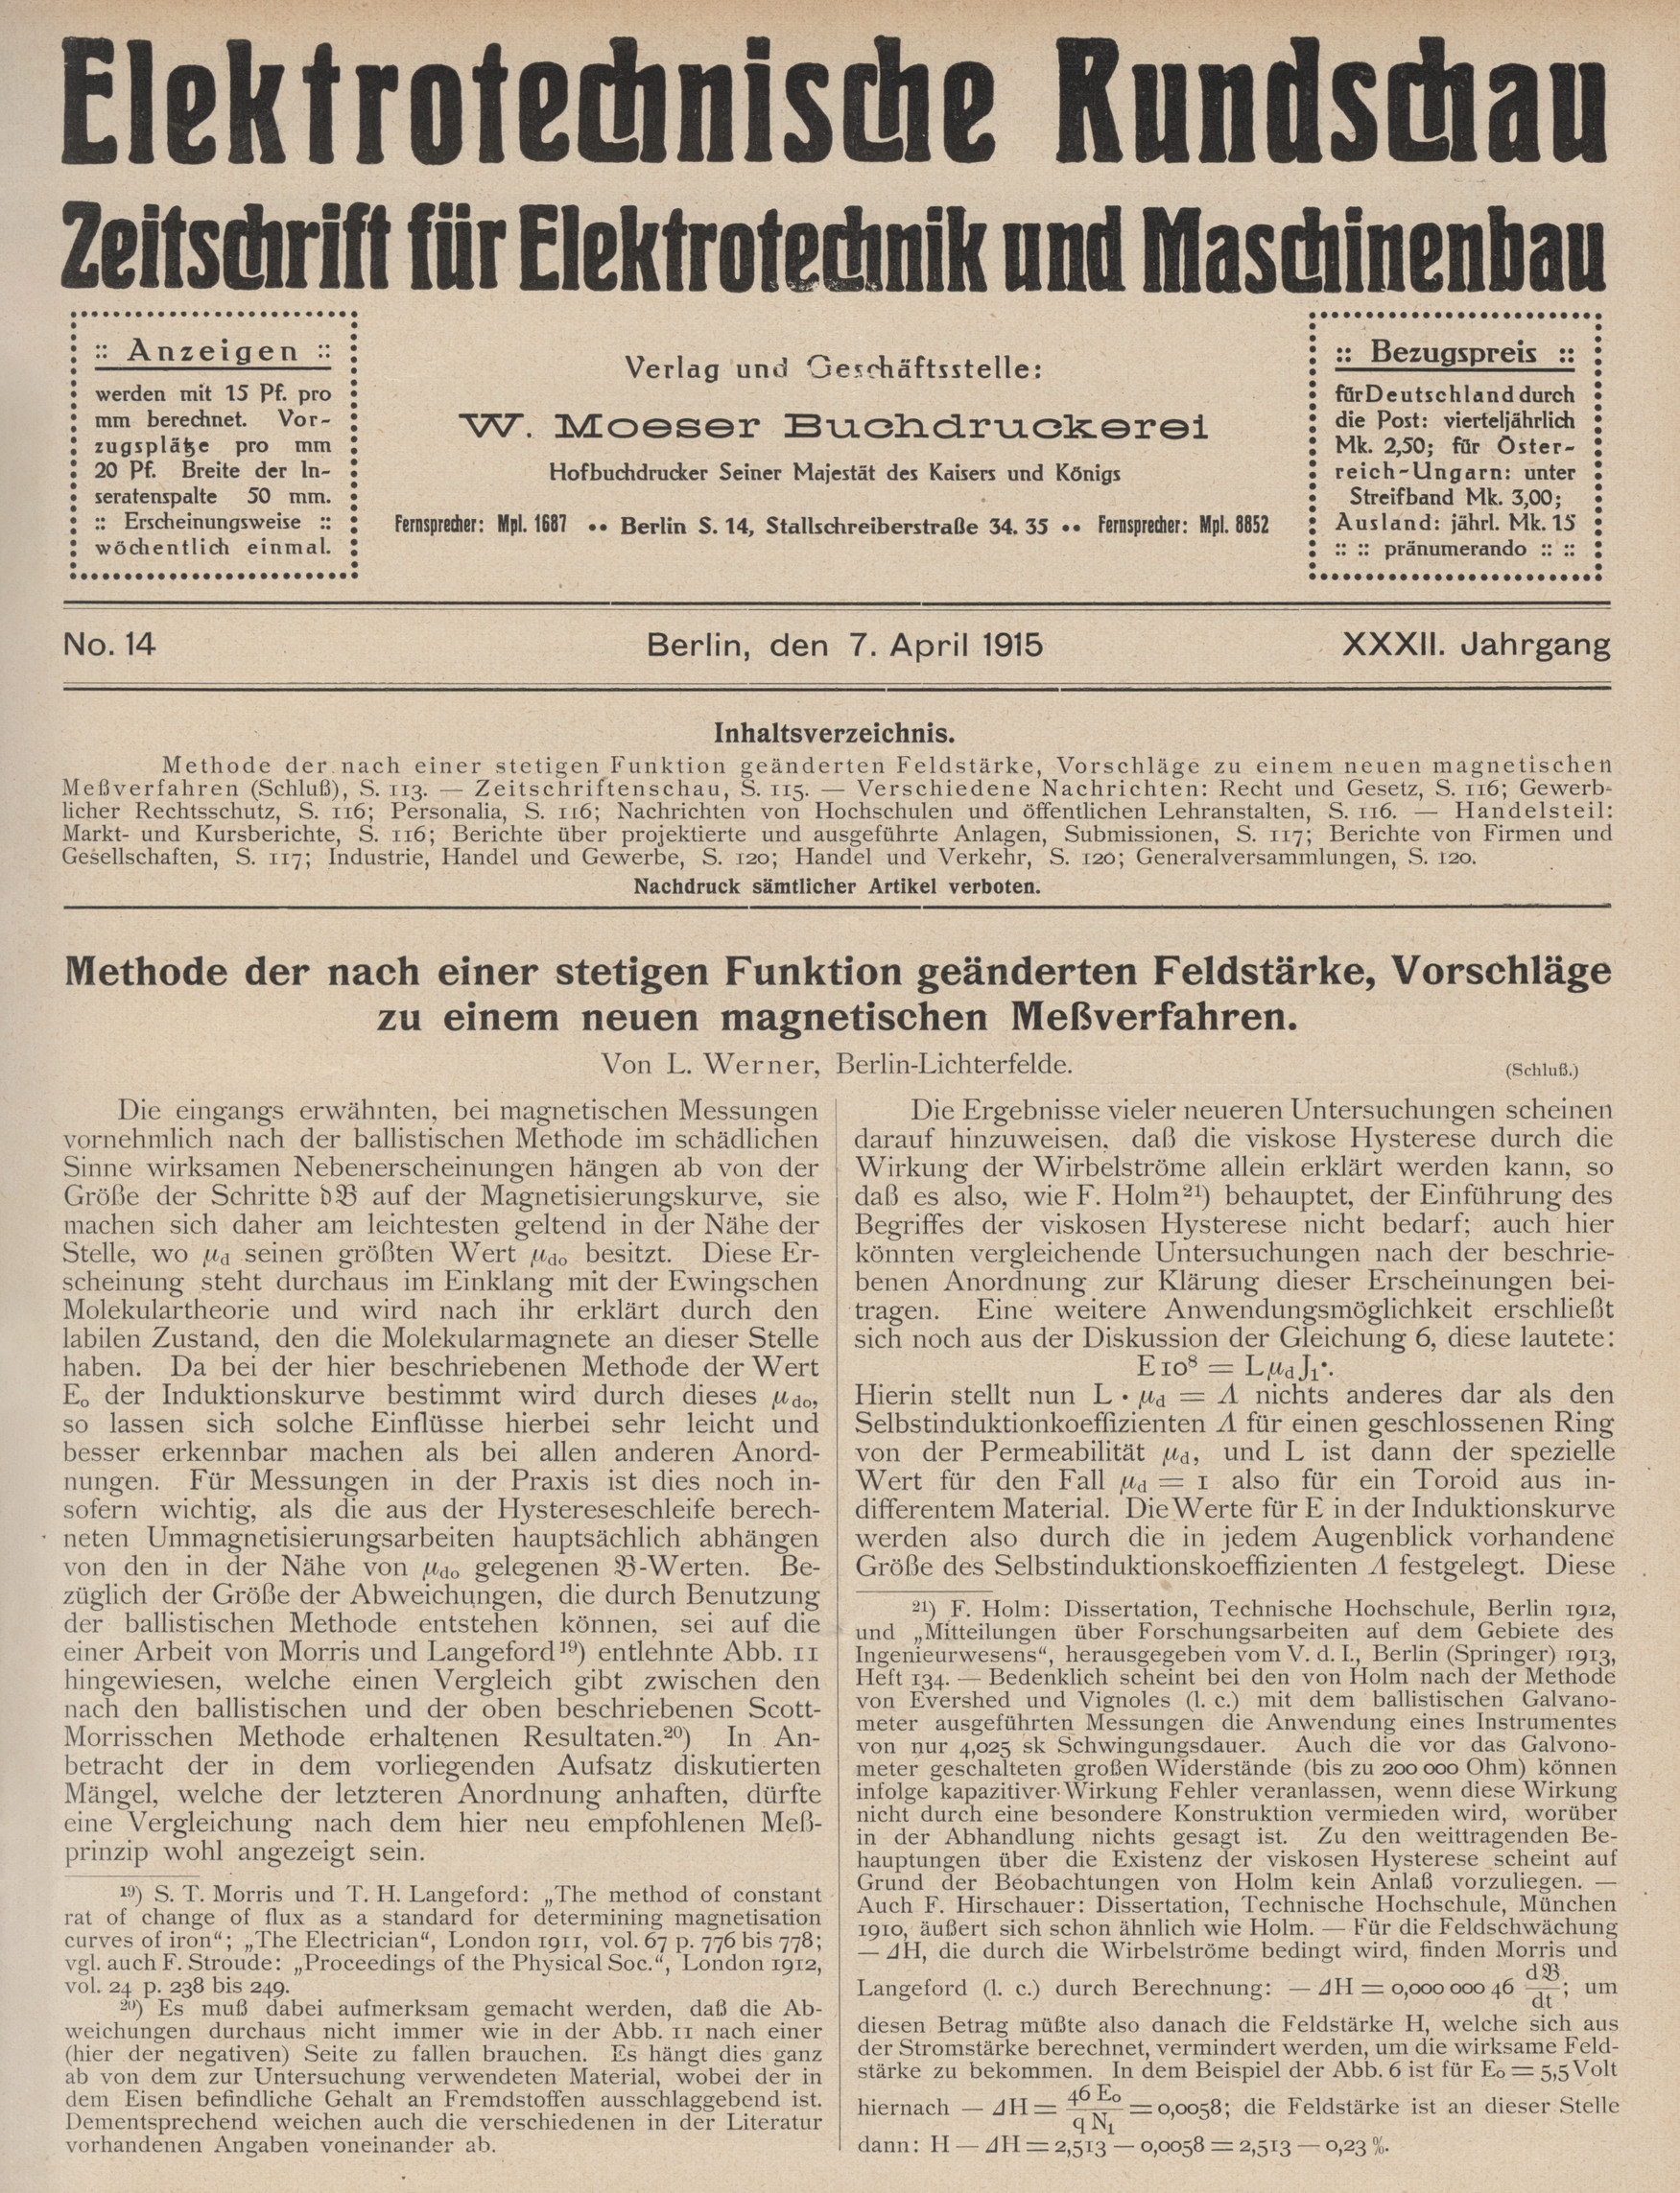 Elektrotechnische Rundschau : Zeitschrift für Elektrotechnik und Maschinenbau + Polytechnische Rundschau, No. 14, XXXII. Jahrgang